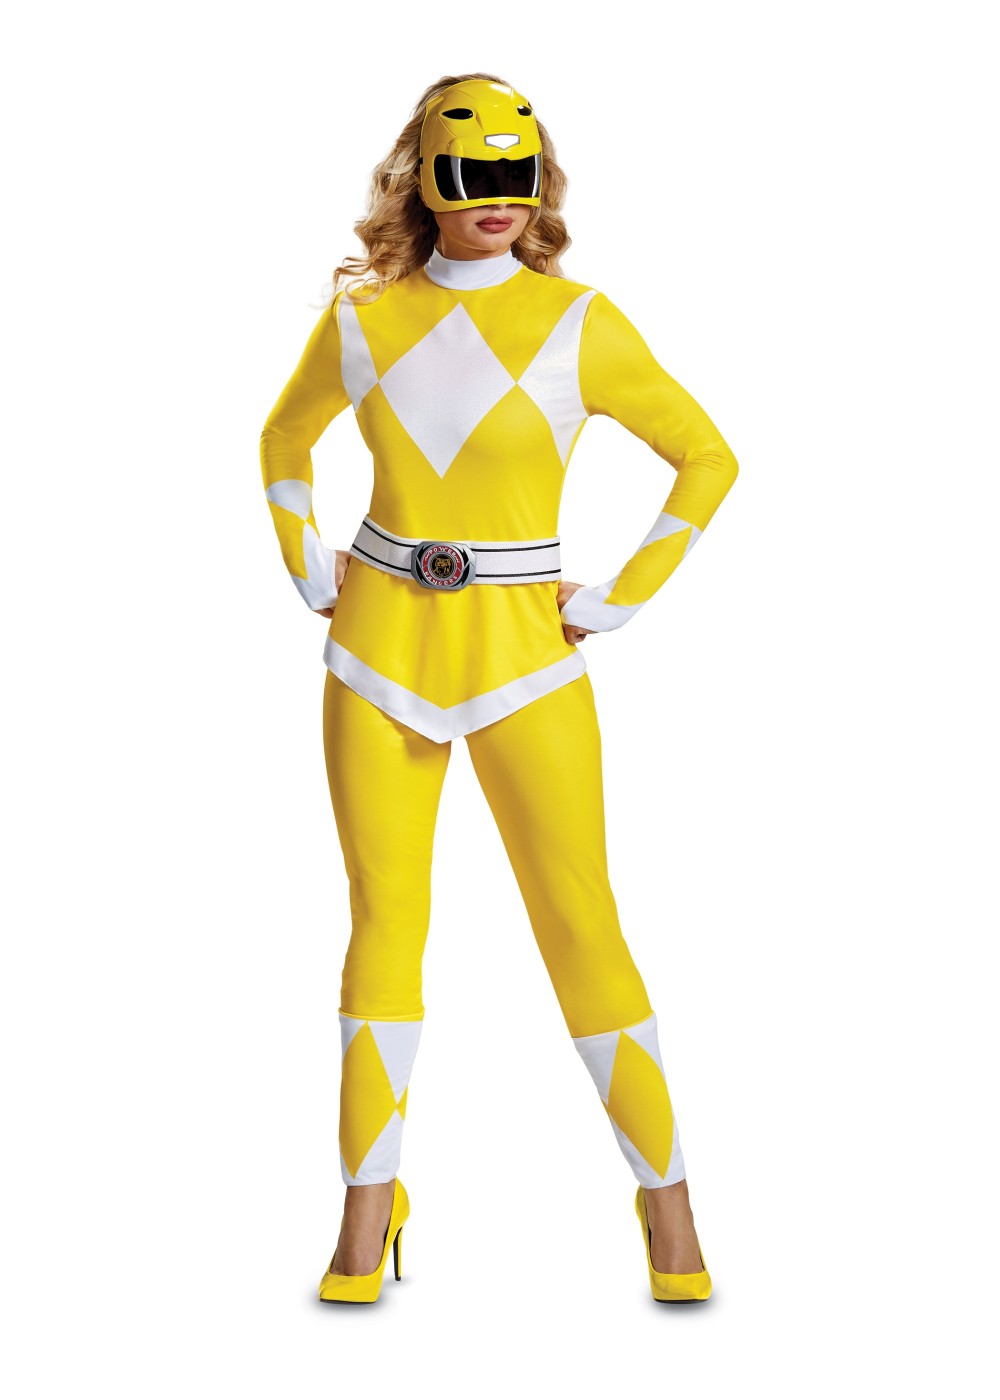 Yellow Power Ranger Women Costume